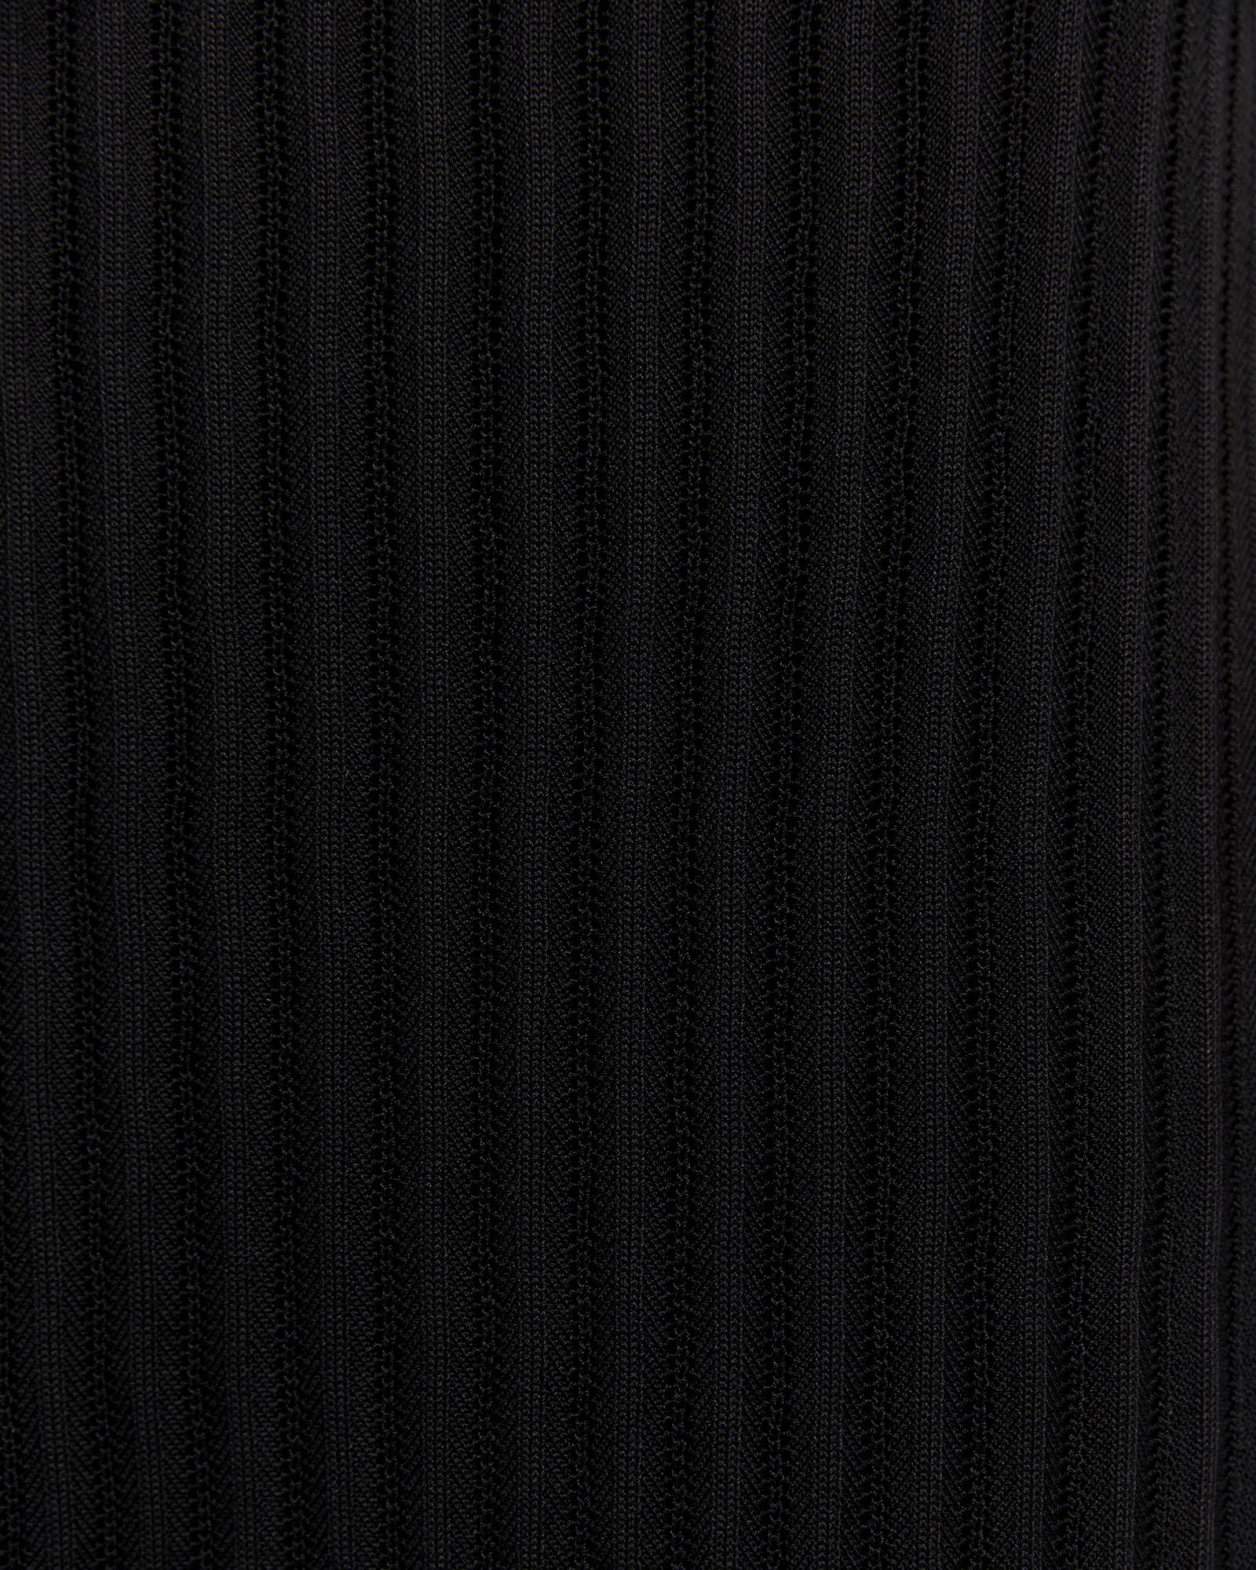 Maeve Cross Back Knit Dress in BLACK